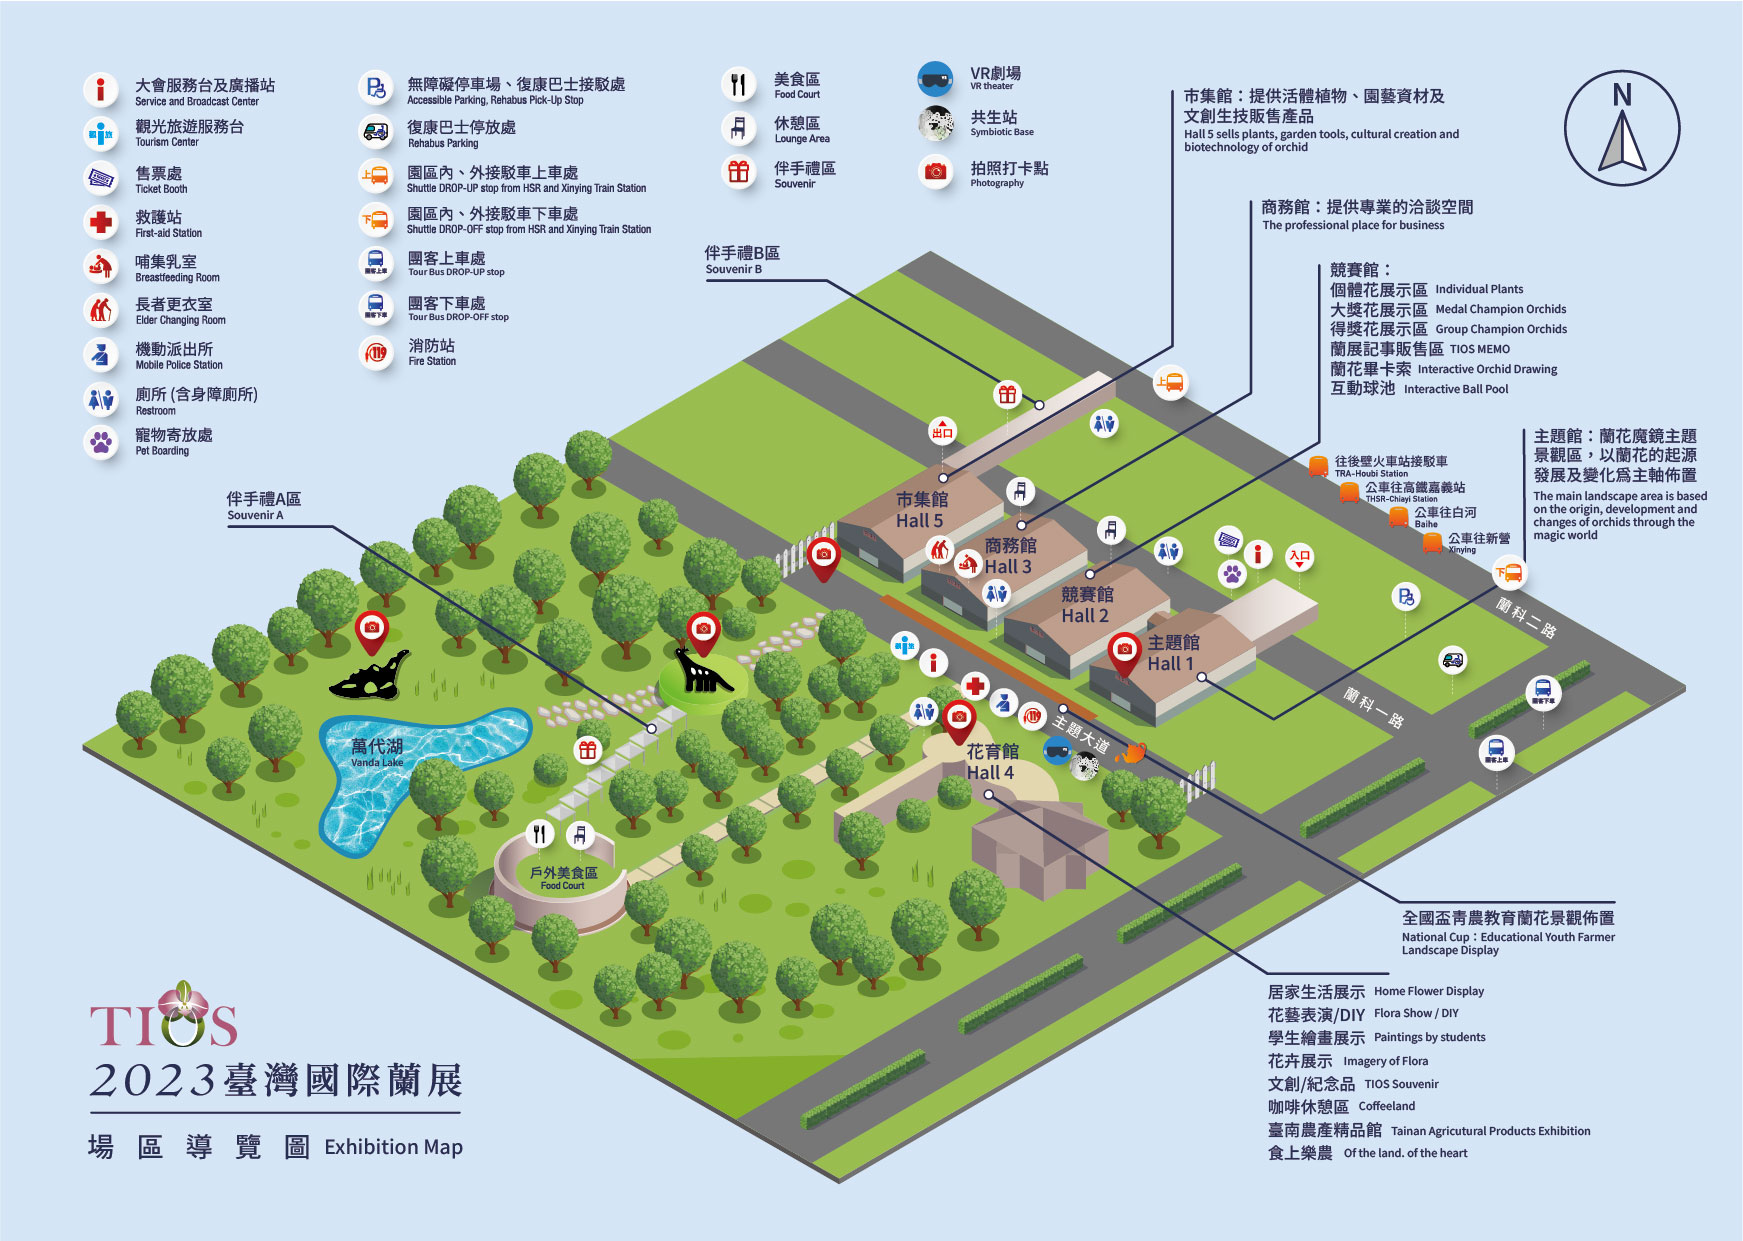 2023 대만국제난초전시회 맵-Taiwan International Orchid Show-台灣國際蘭展.jpg